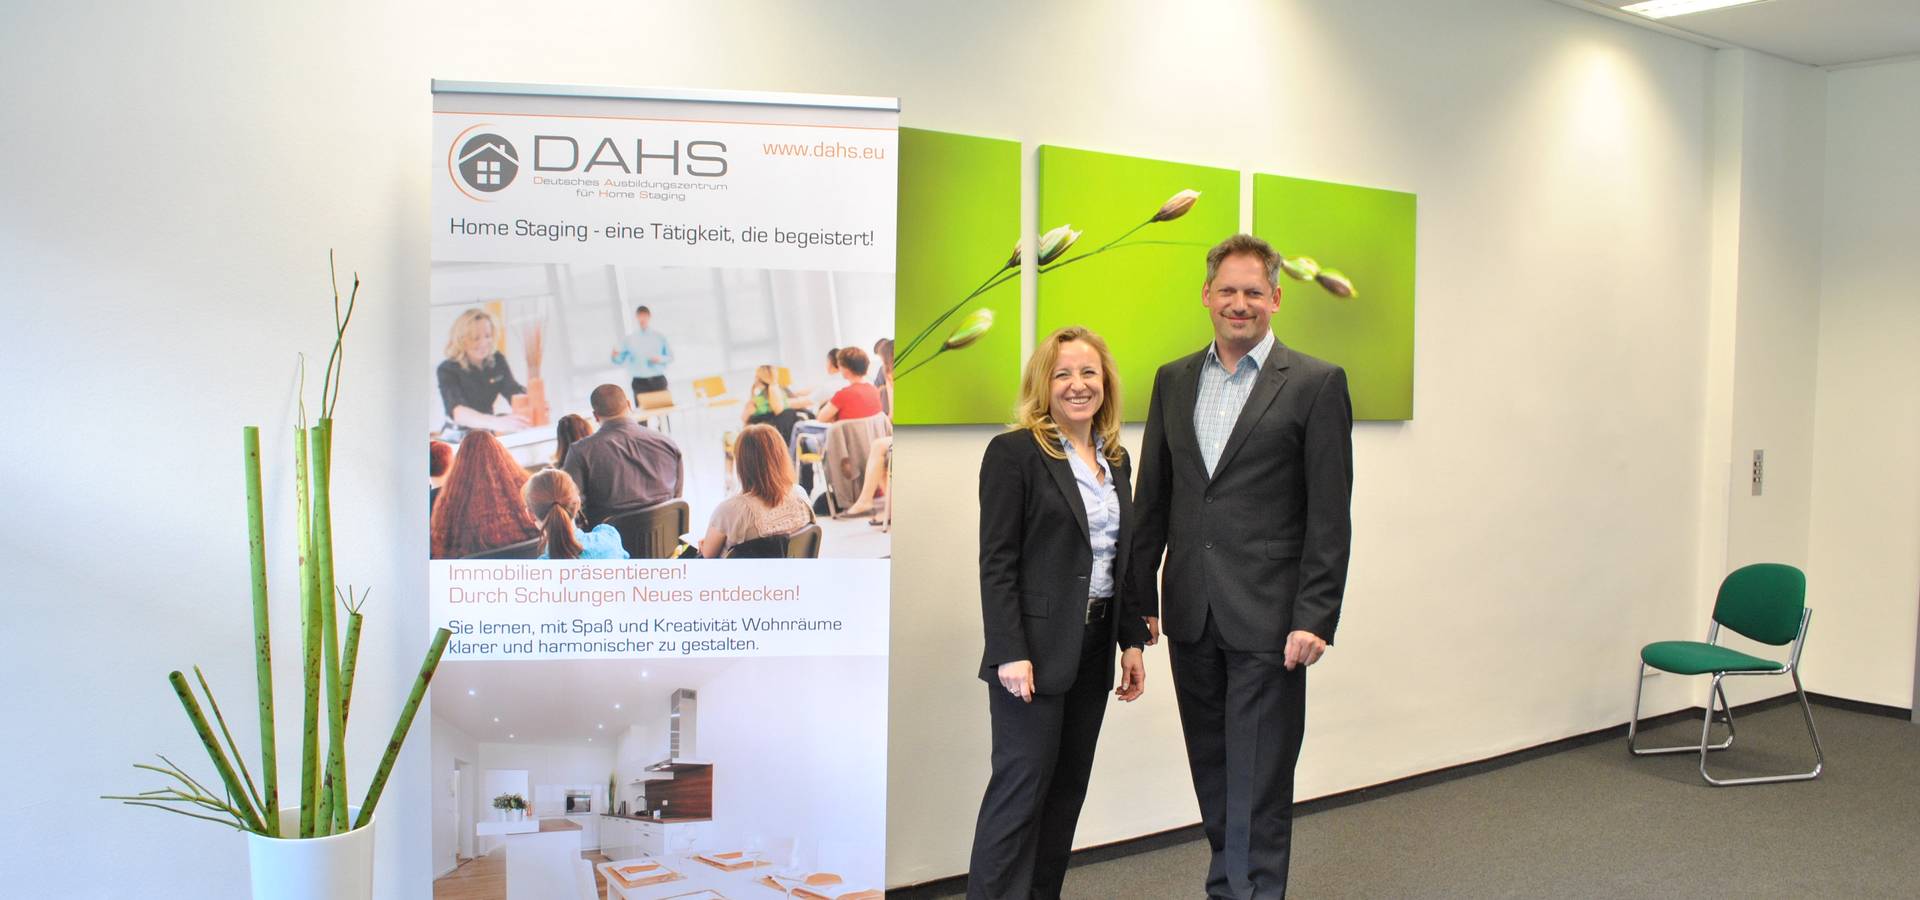 DAHS Deutsches Ausbildungszentrum für Home Staging